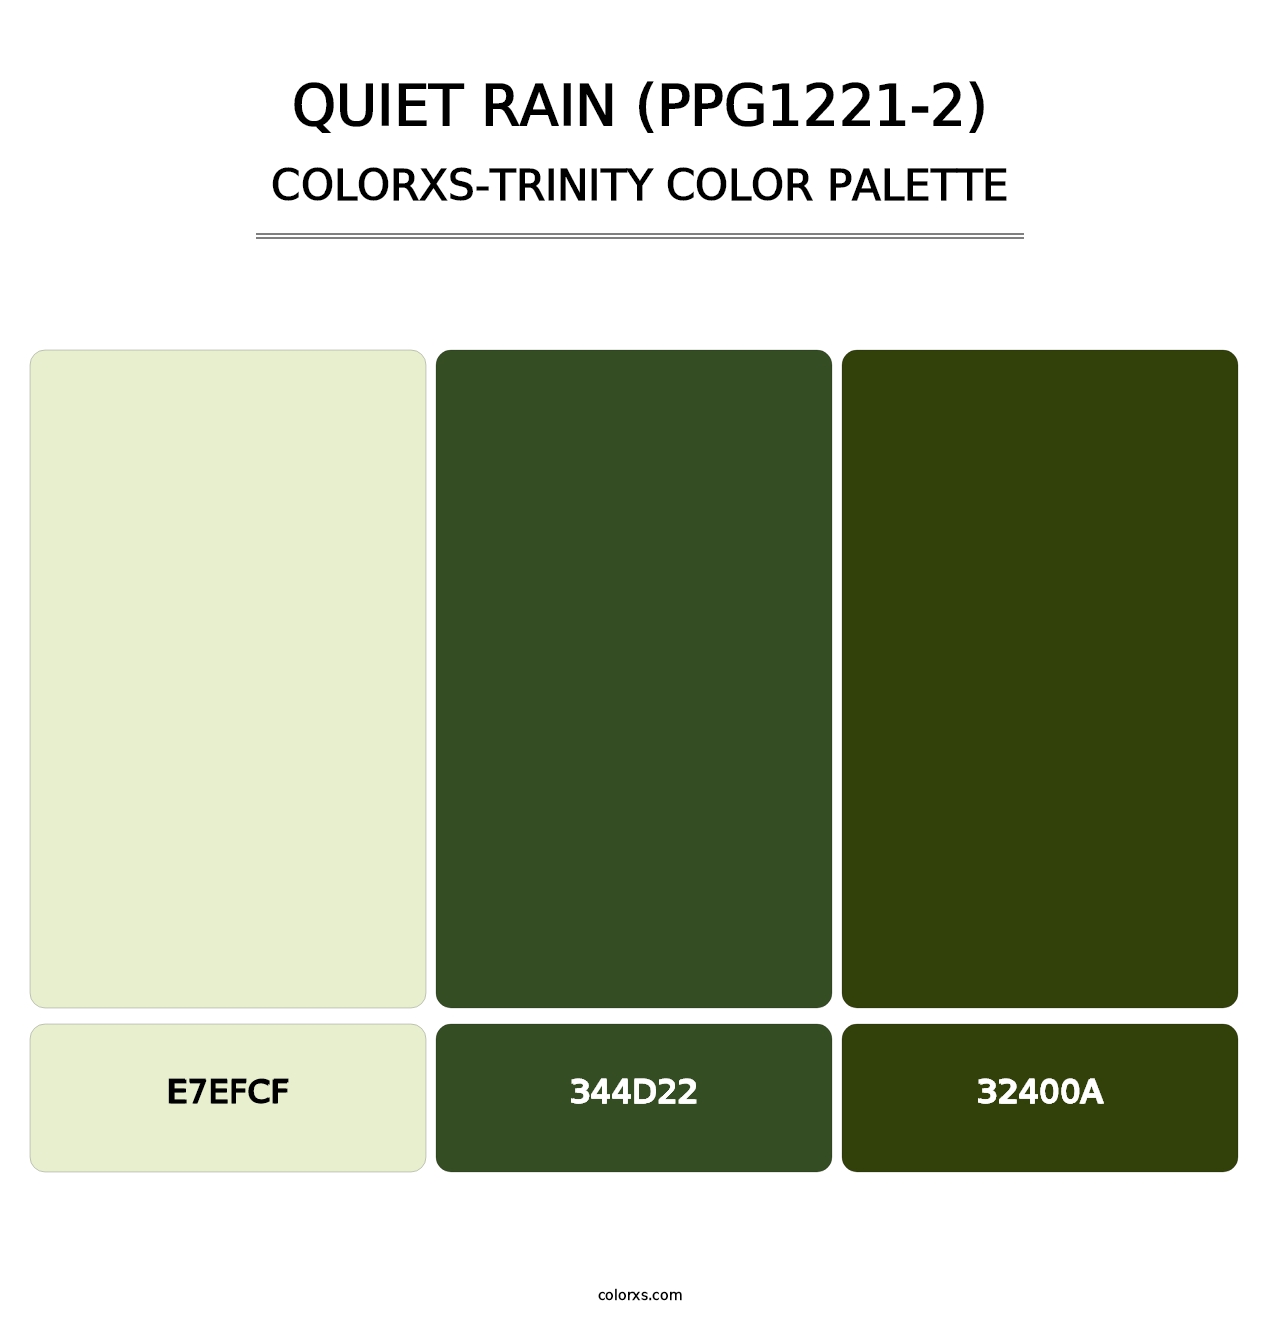 Quiet Rain (PPG1221-2) - Colorxs Trinity Palette